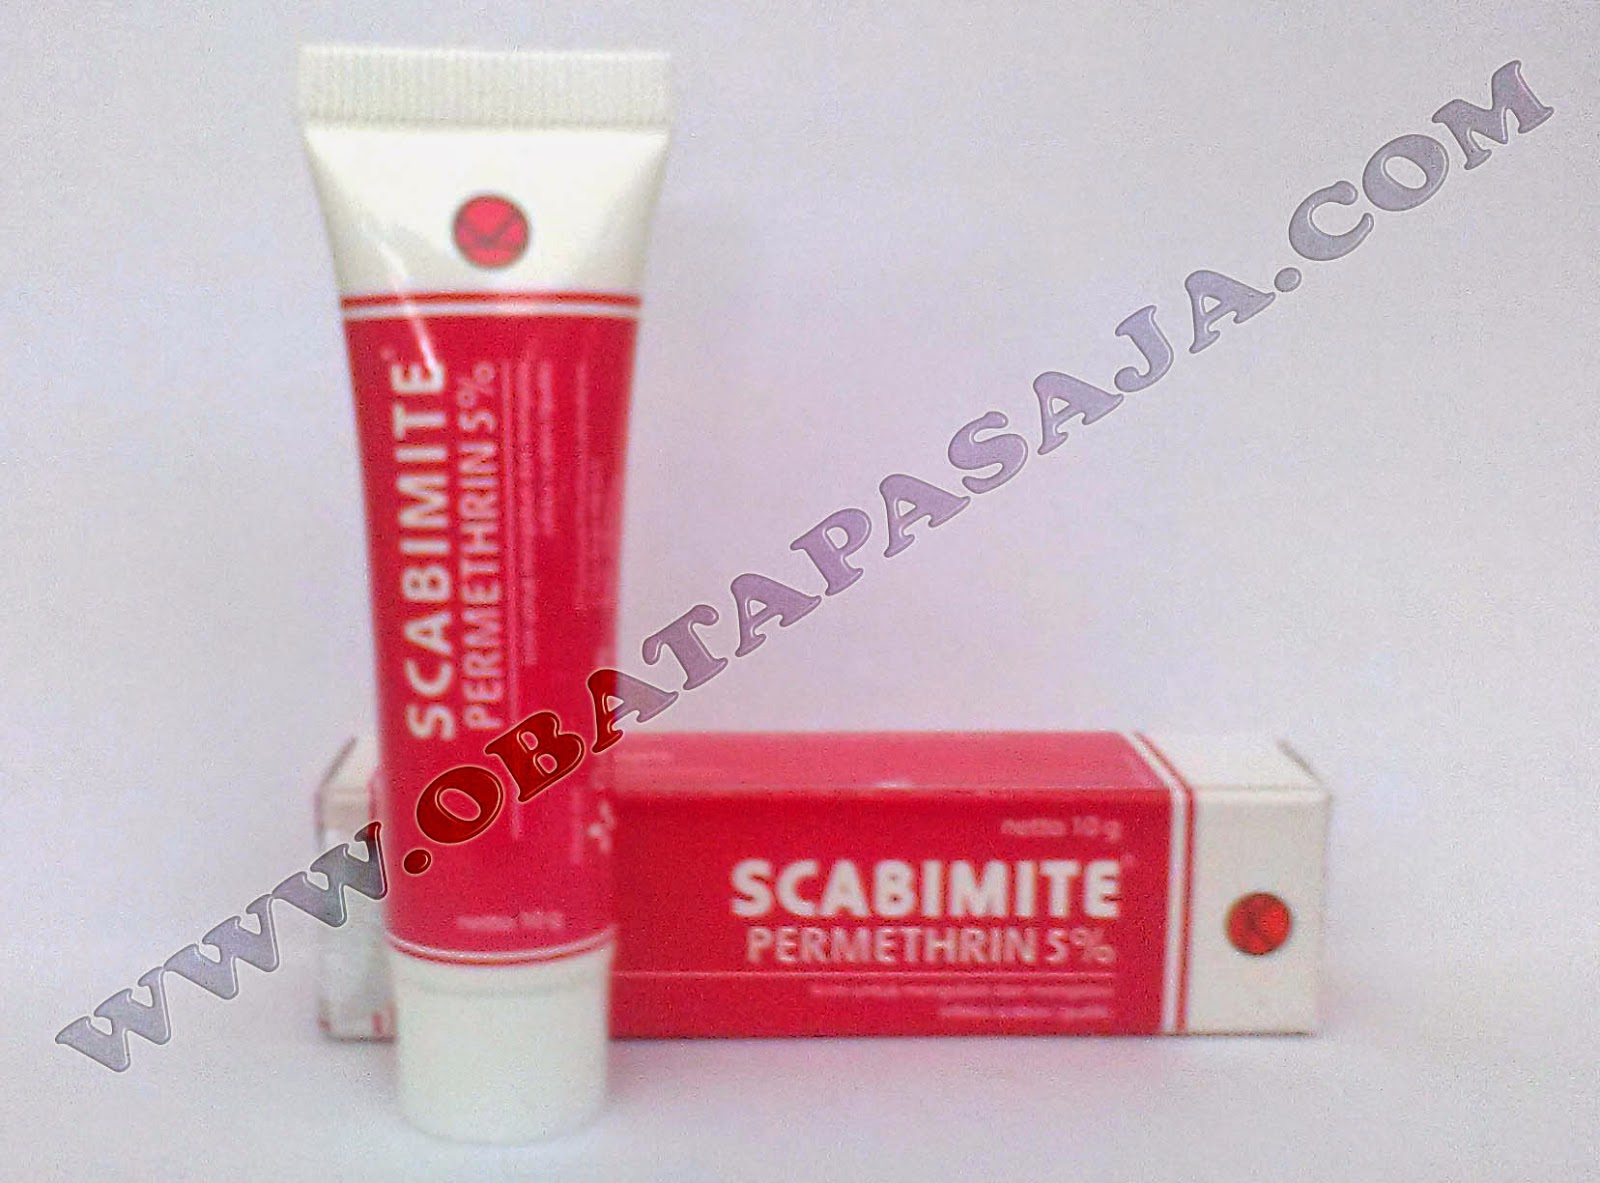 Scabimite Krim Untuk Mengobati Infeksi Scabies (gudik)